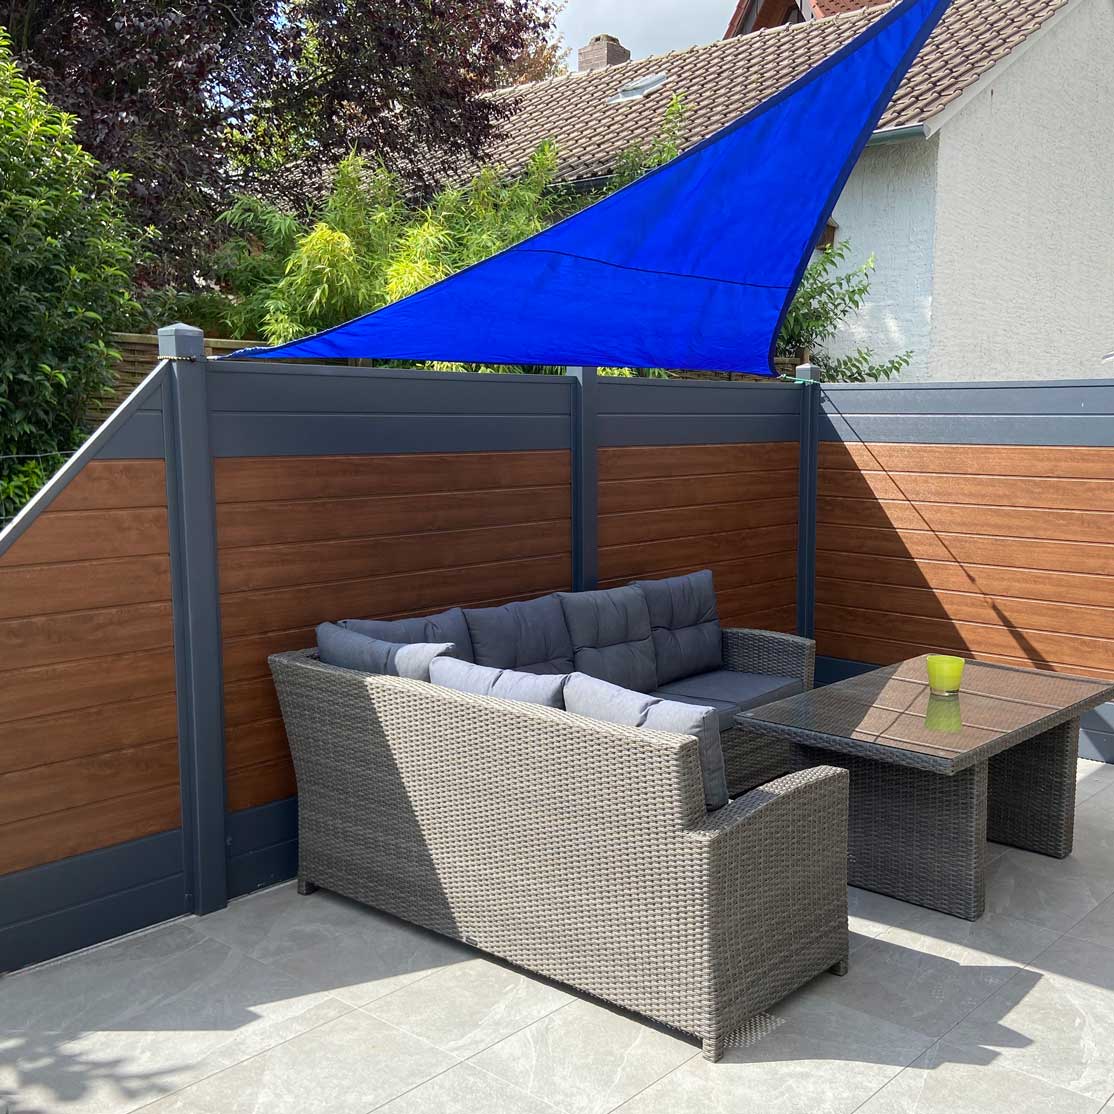 Terrassensichtschutz in Nussbaum und Anthrazit aus hochwertigen Kunststoff PVC